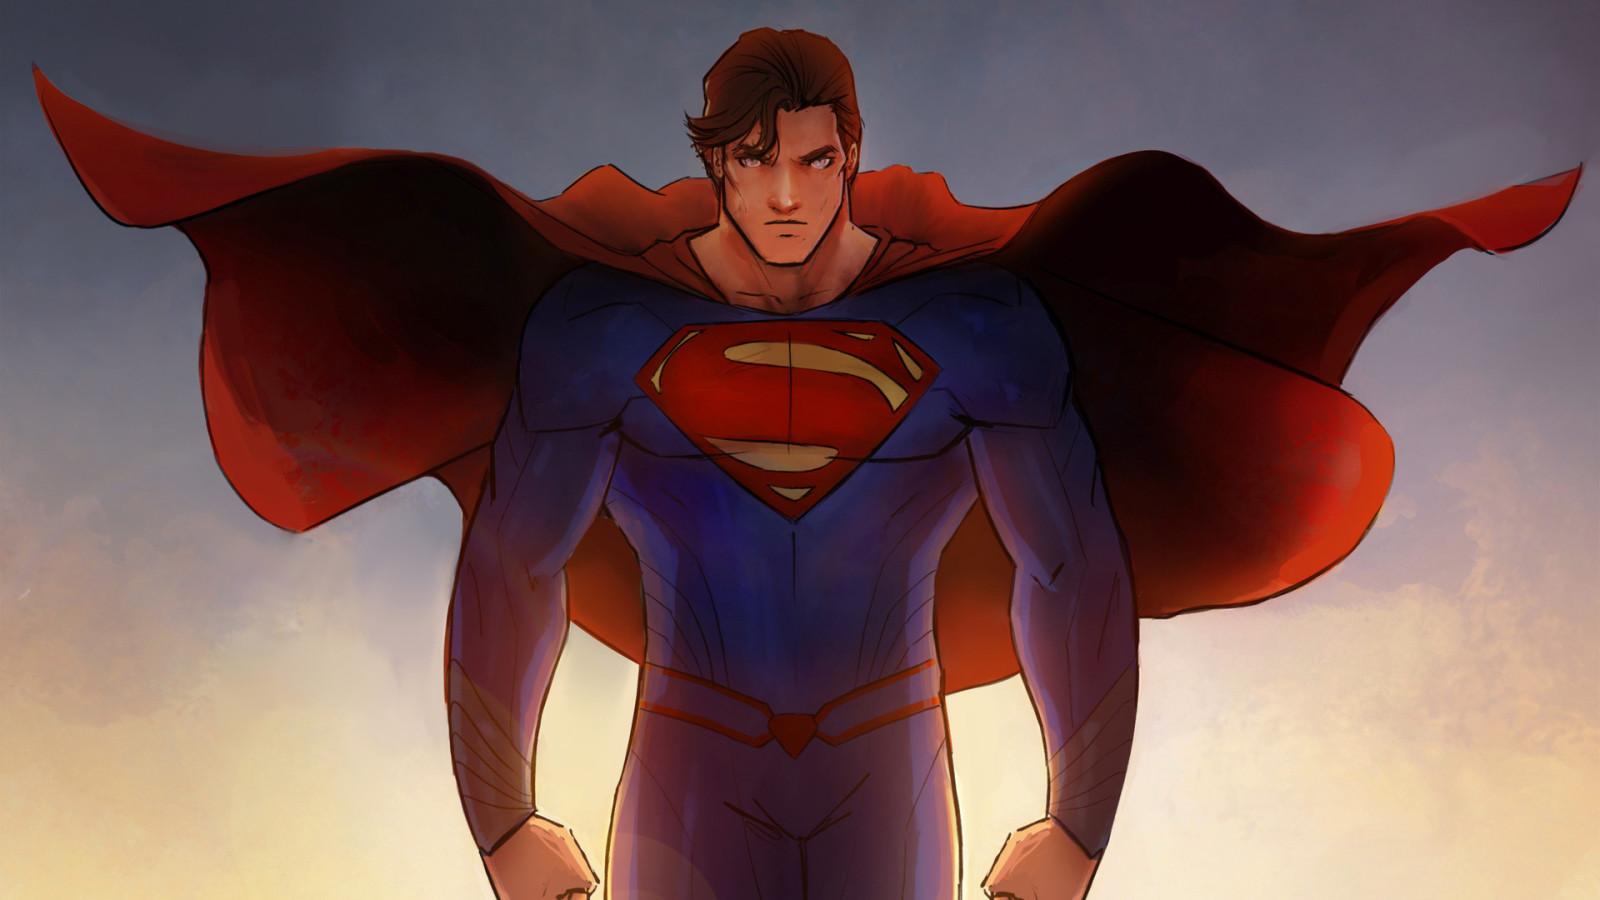 Superman at night by jotakaanimation on DeviantArt